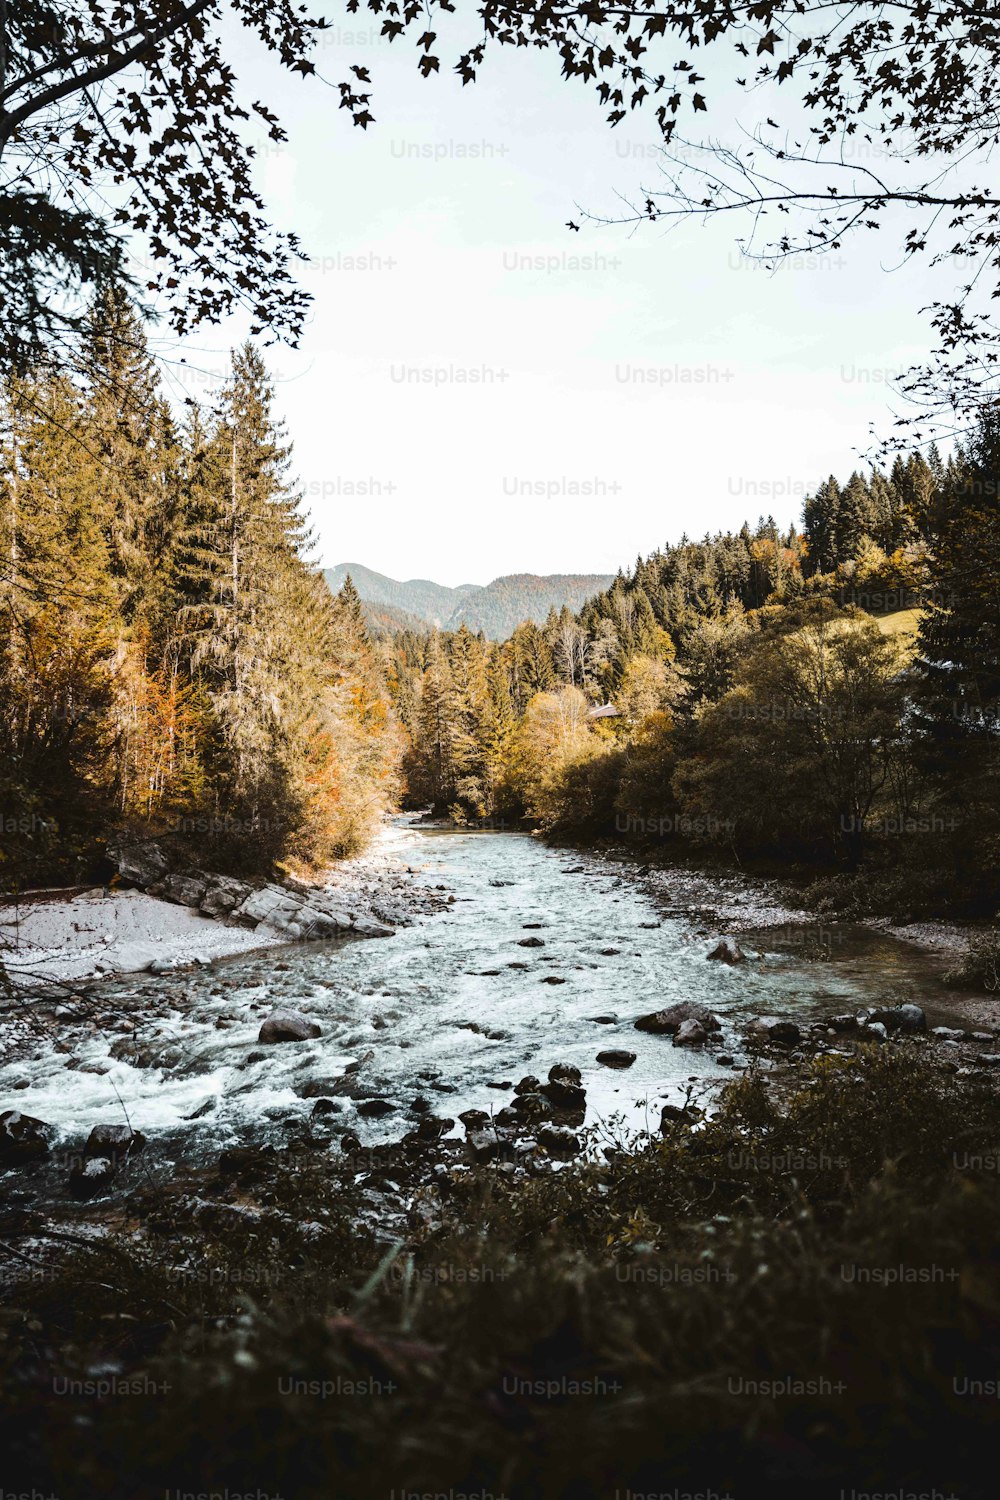 Un río que atraviesa un bosque lleno de árboles